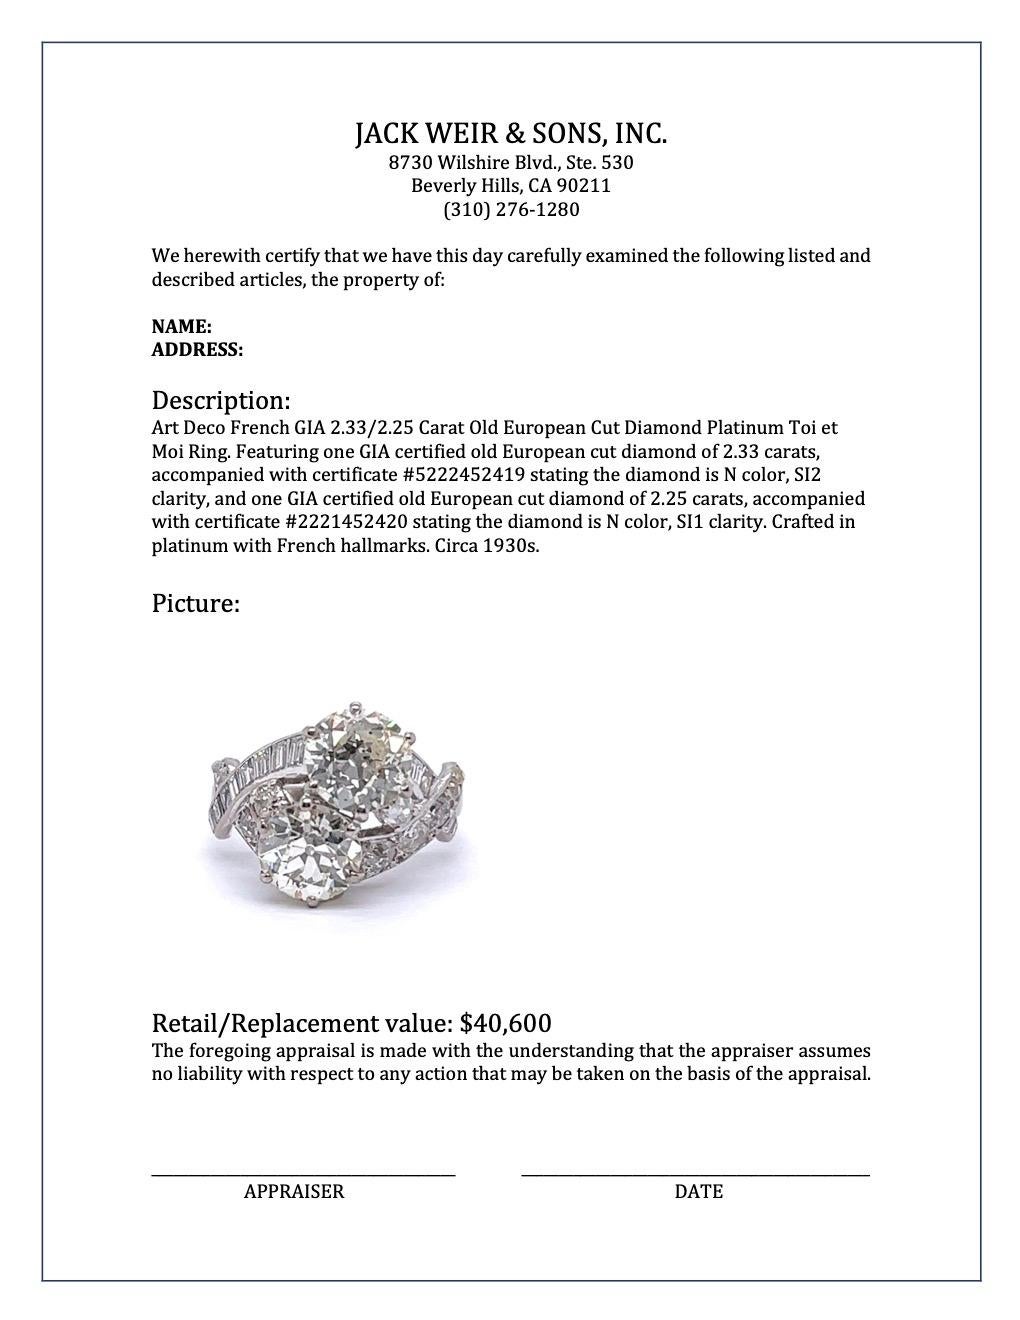 Art Deco French GIA 2.33/2.25 Carat OEC Diamond Platinum Toi et Moi Ring 4